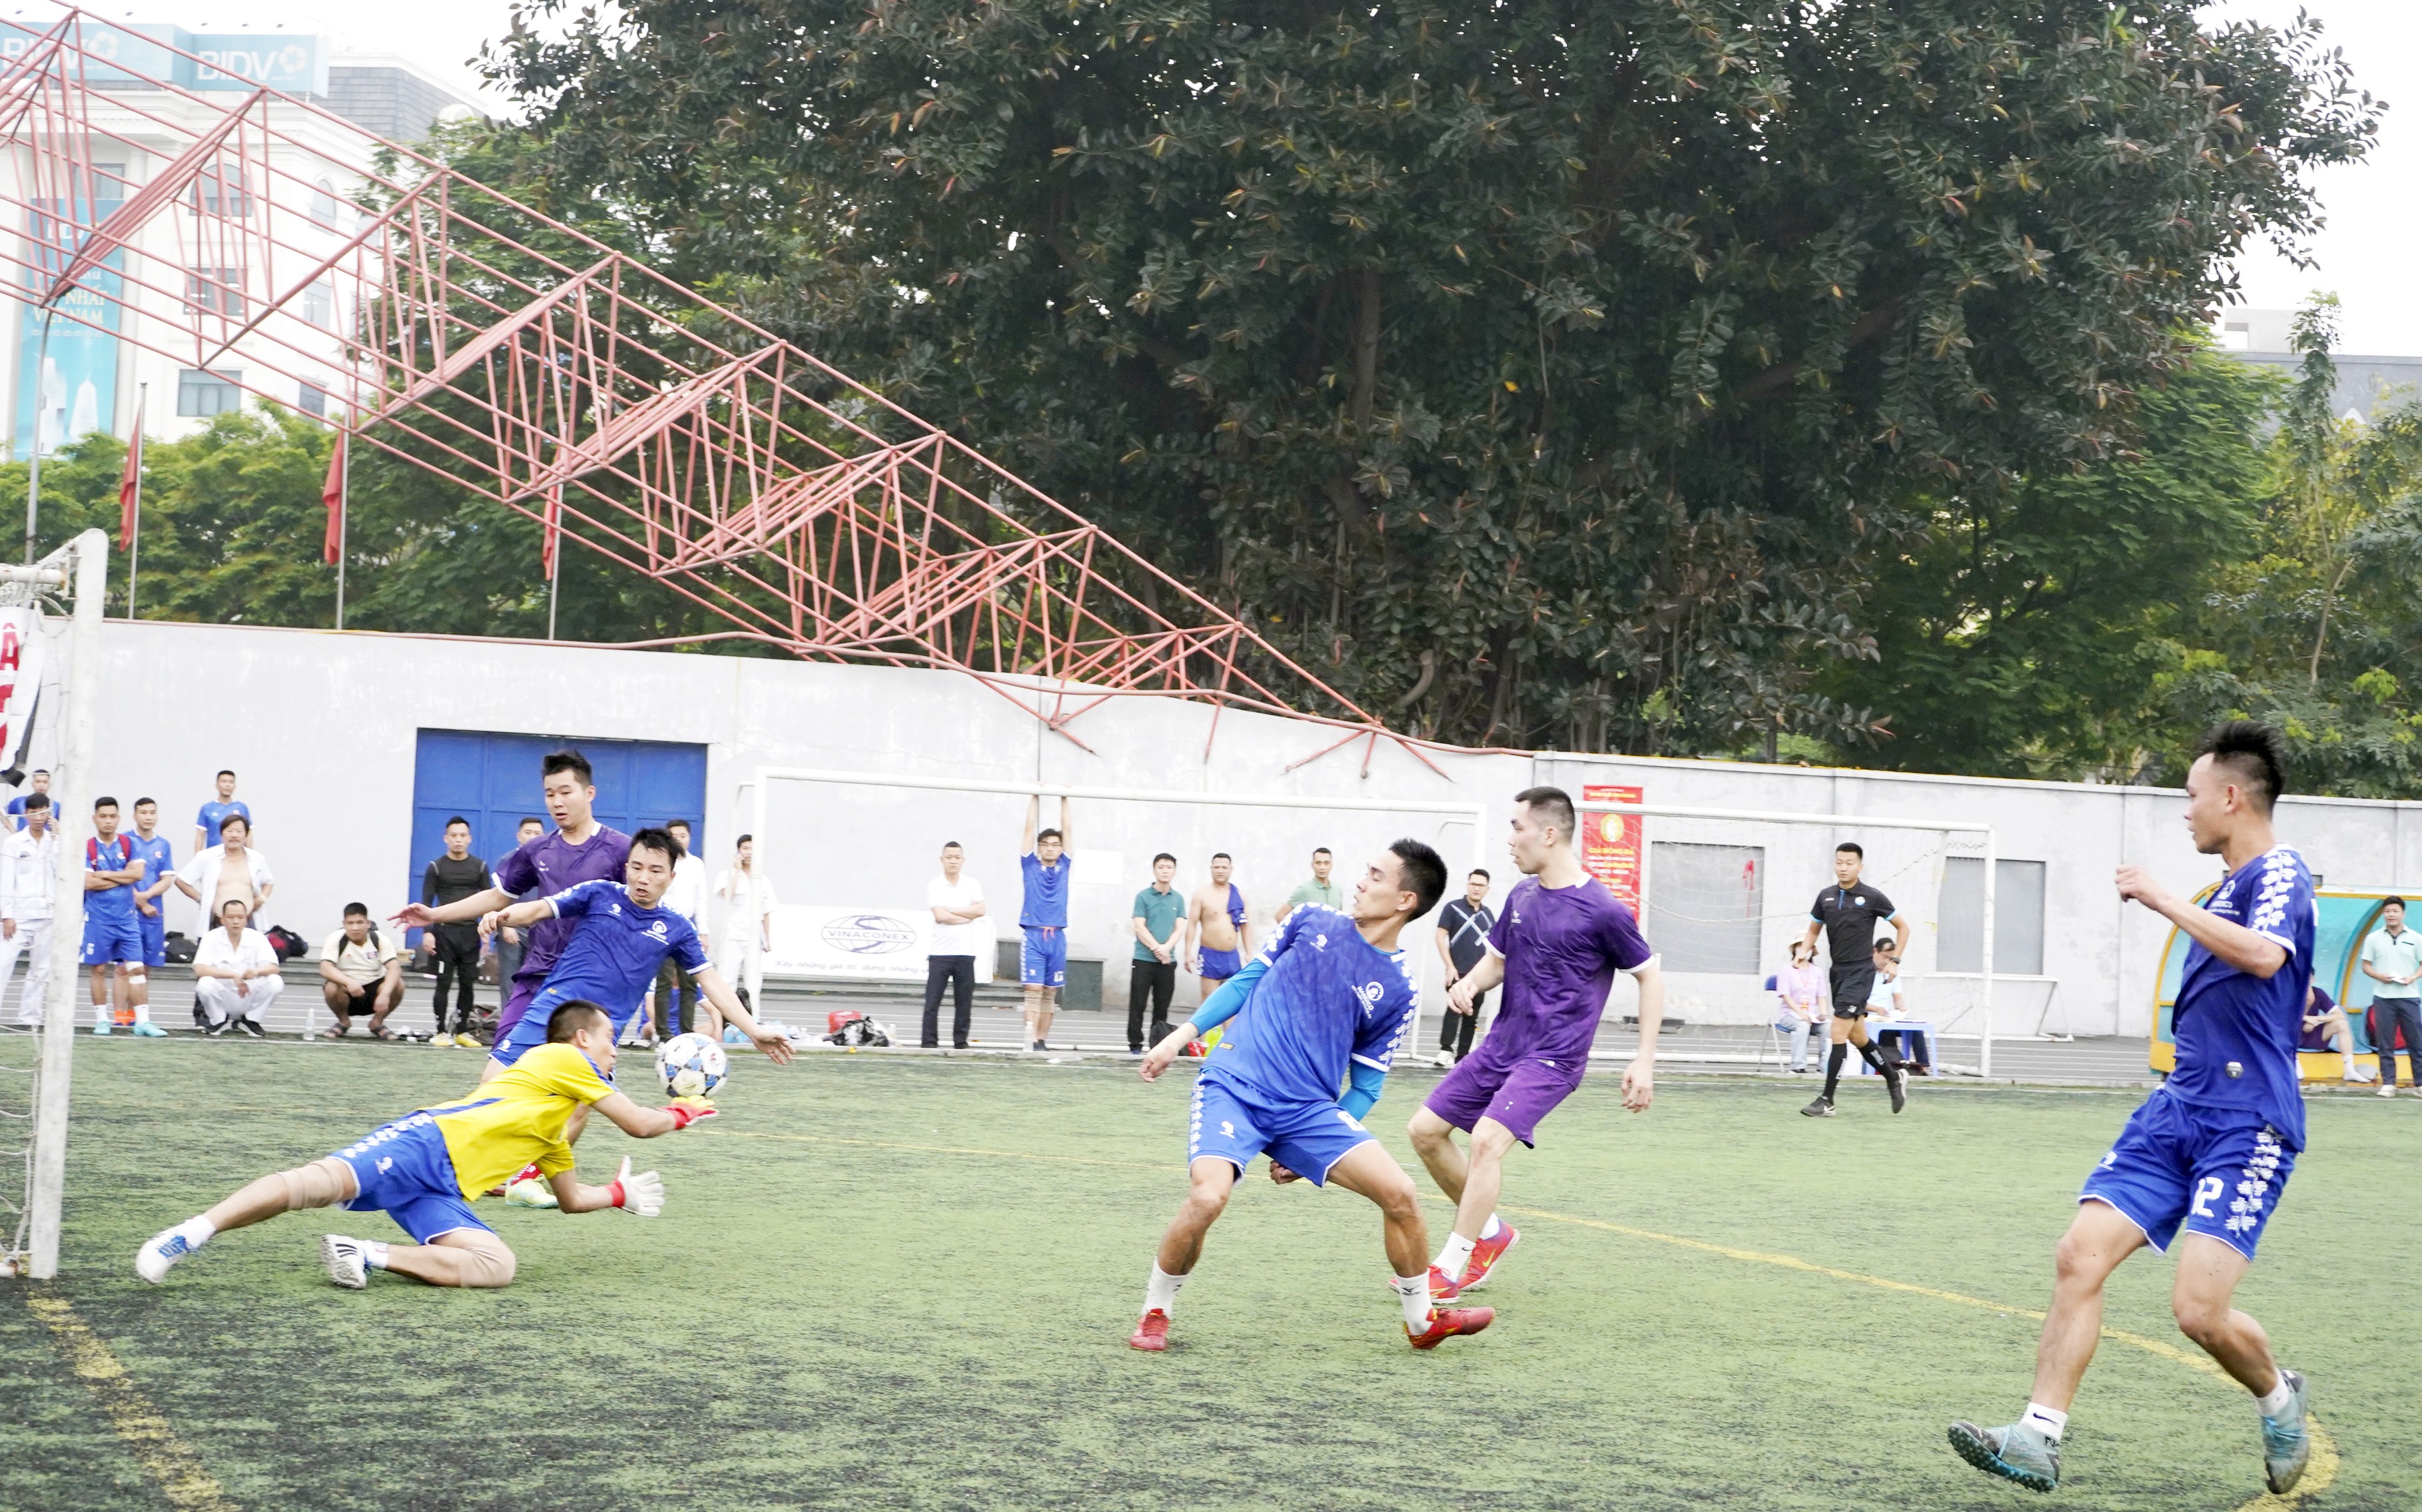 Ngày thi đấu thứ 2, Giải bóng đá CNVCLĐ Cúp báo Lao động Thủ đô lần thứ IX: Kịch tính đến tận phút cuối